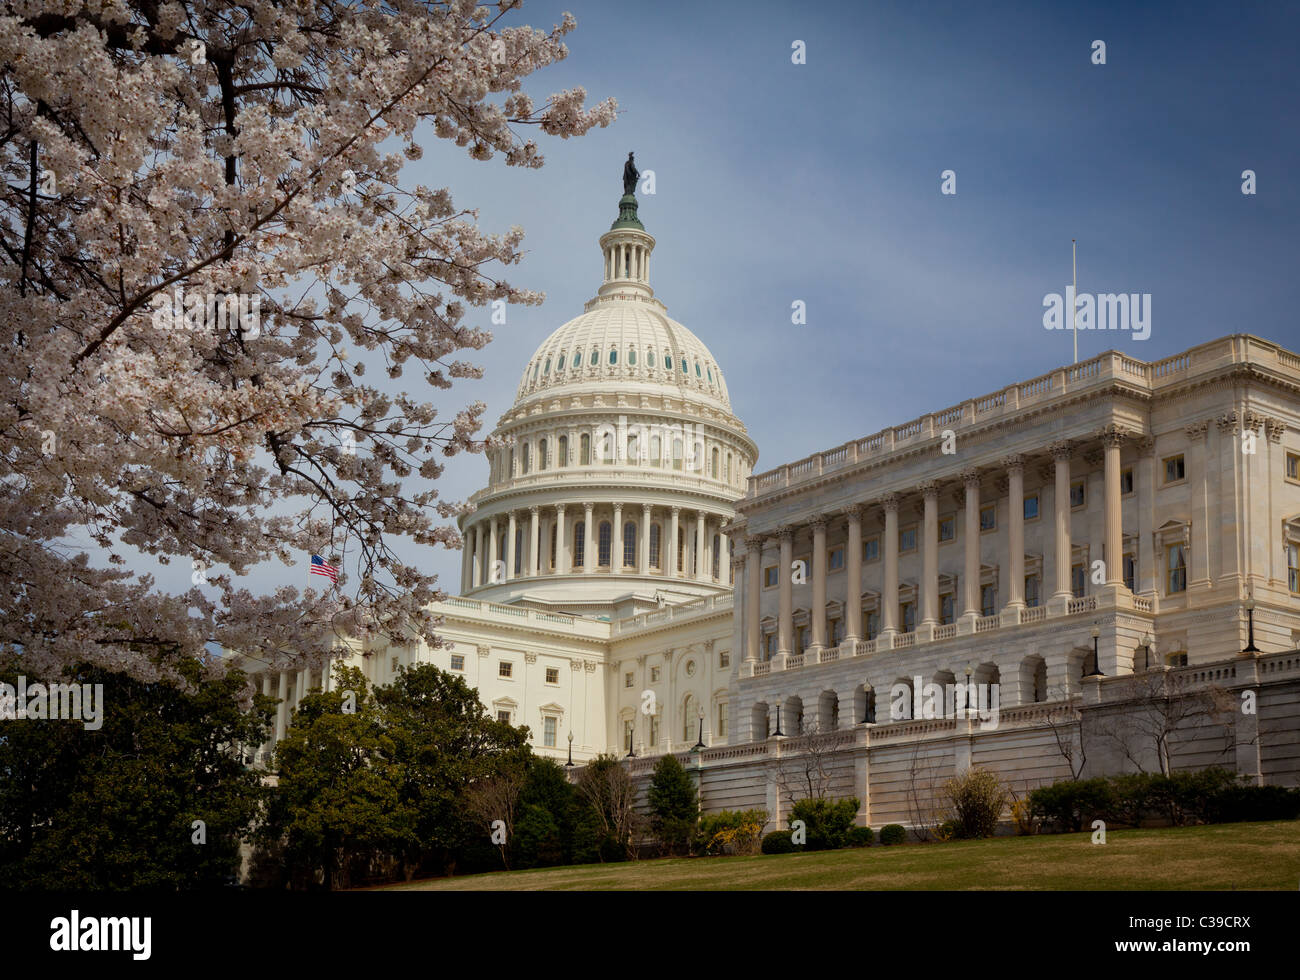 El Capitolio de los Estados Unidos al final del National Mall en Washington, D.C. Foto de stock